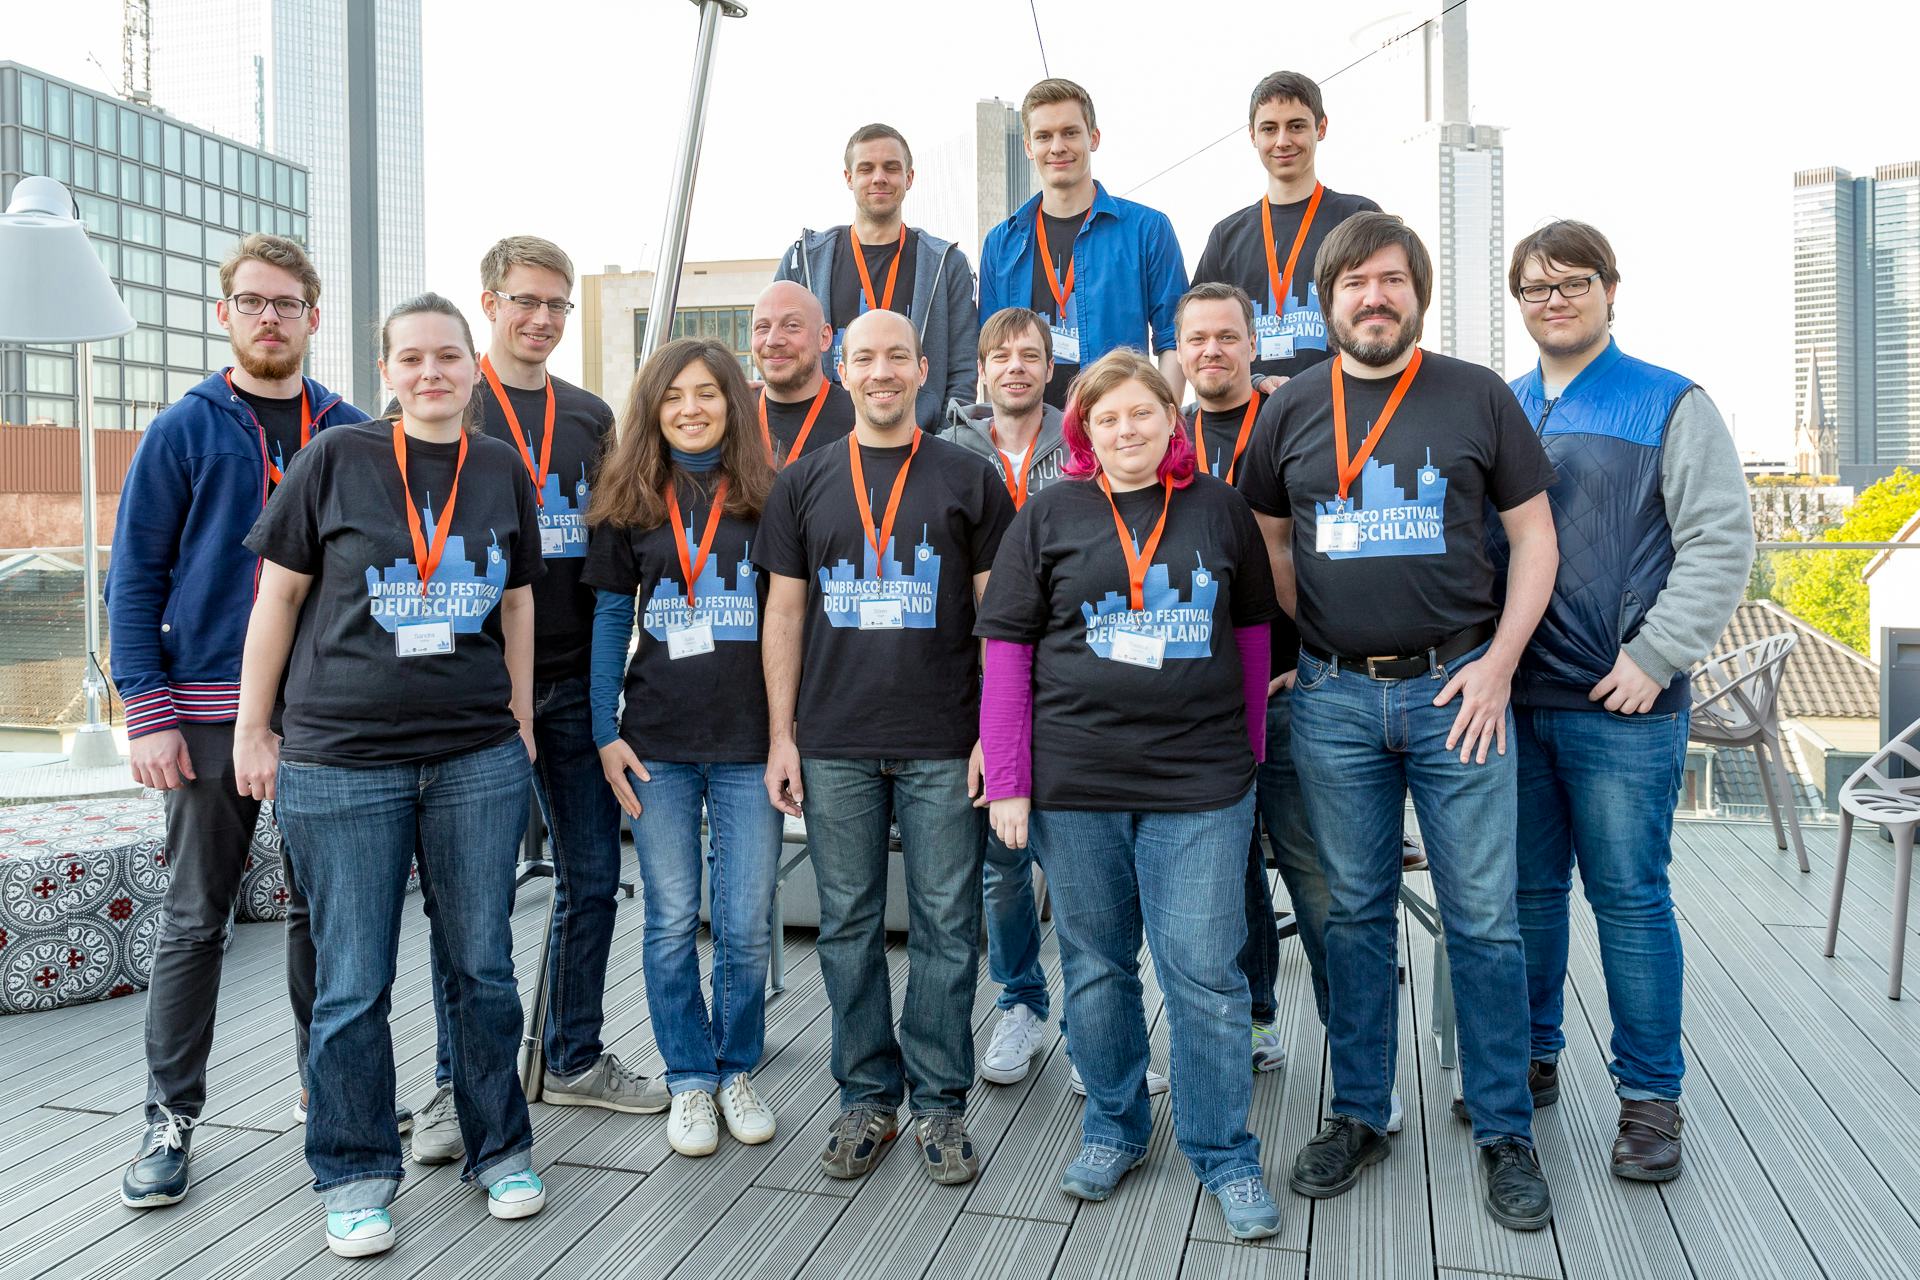 Das Team von byte5 beim Umbraco-Festival Deutschland 2017